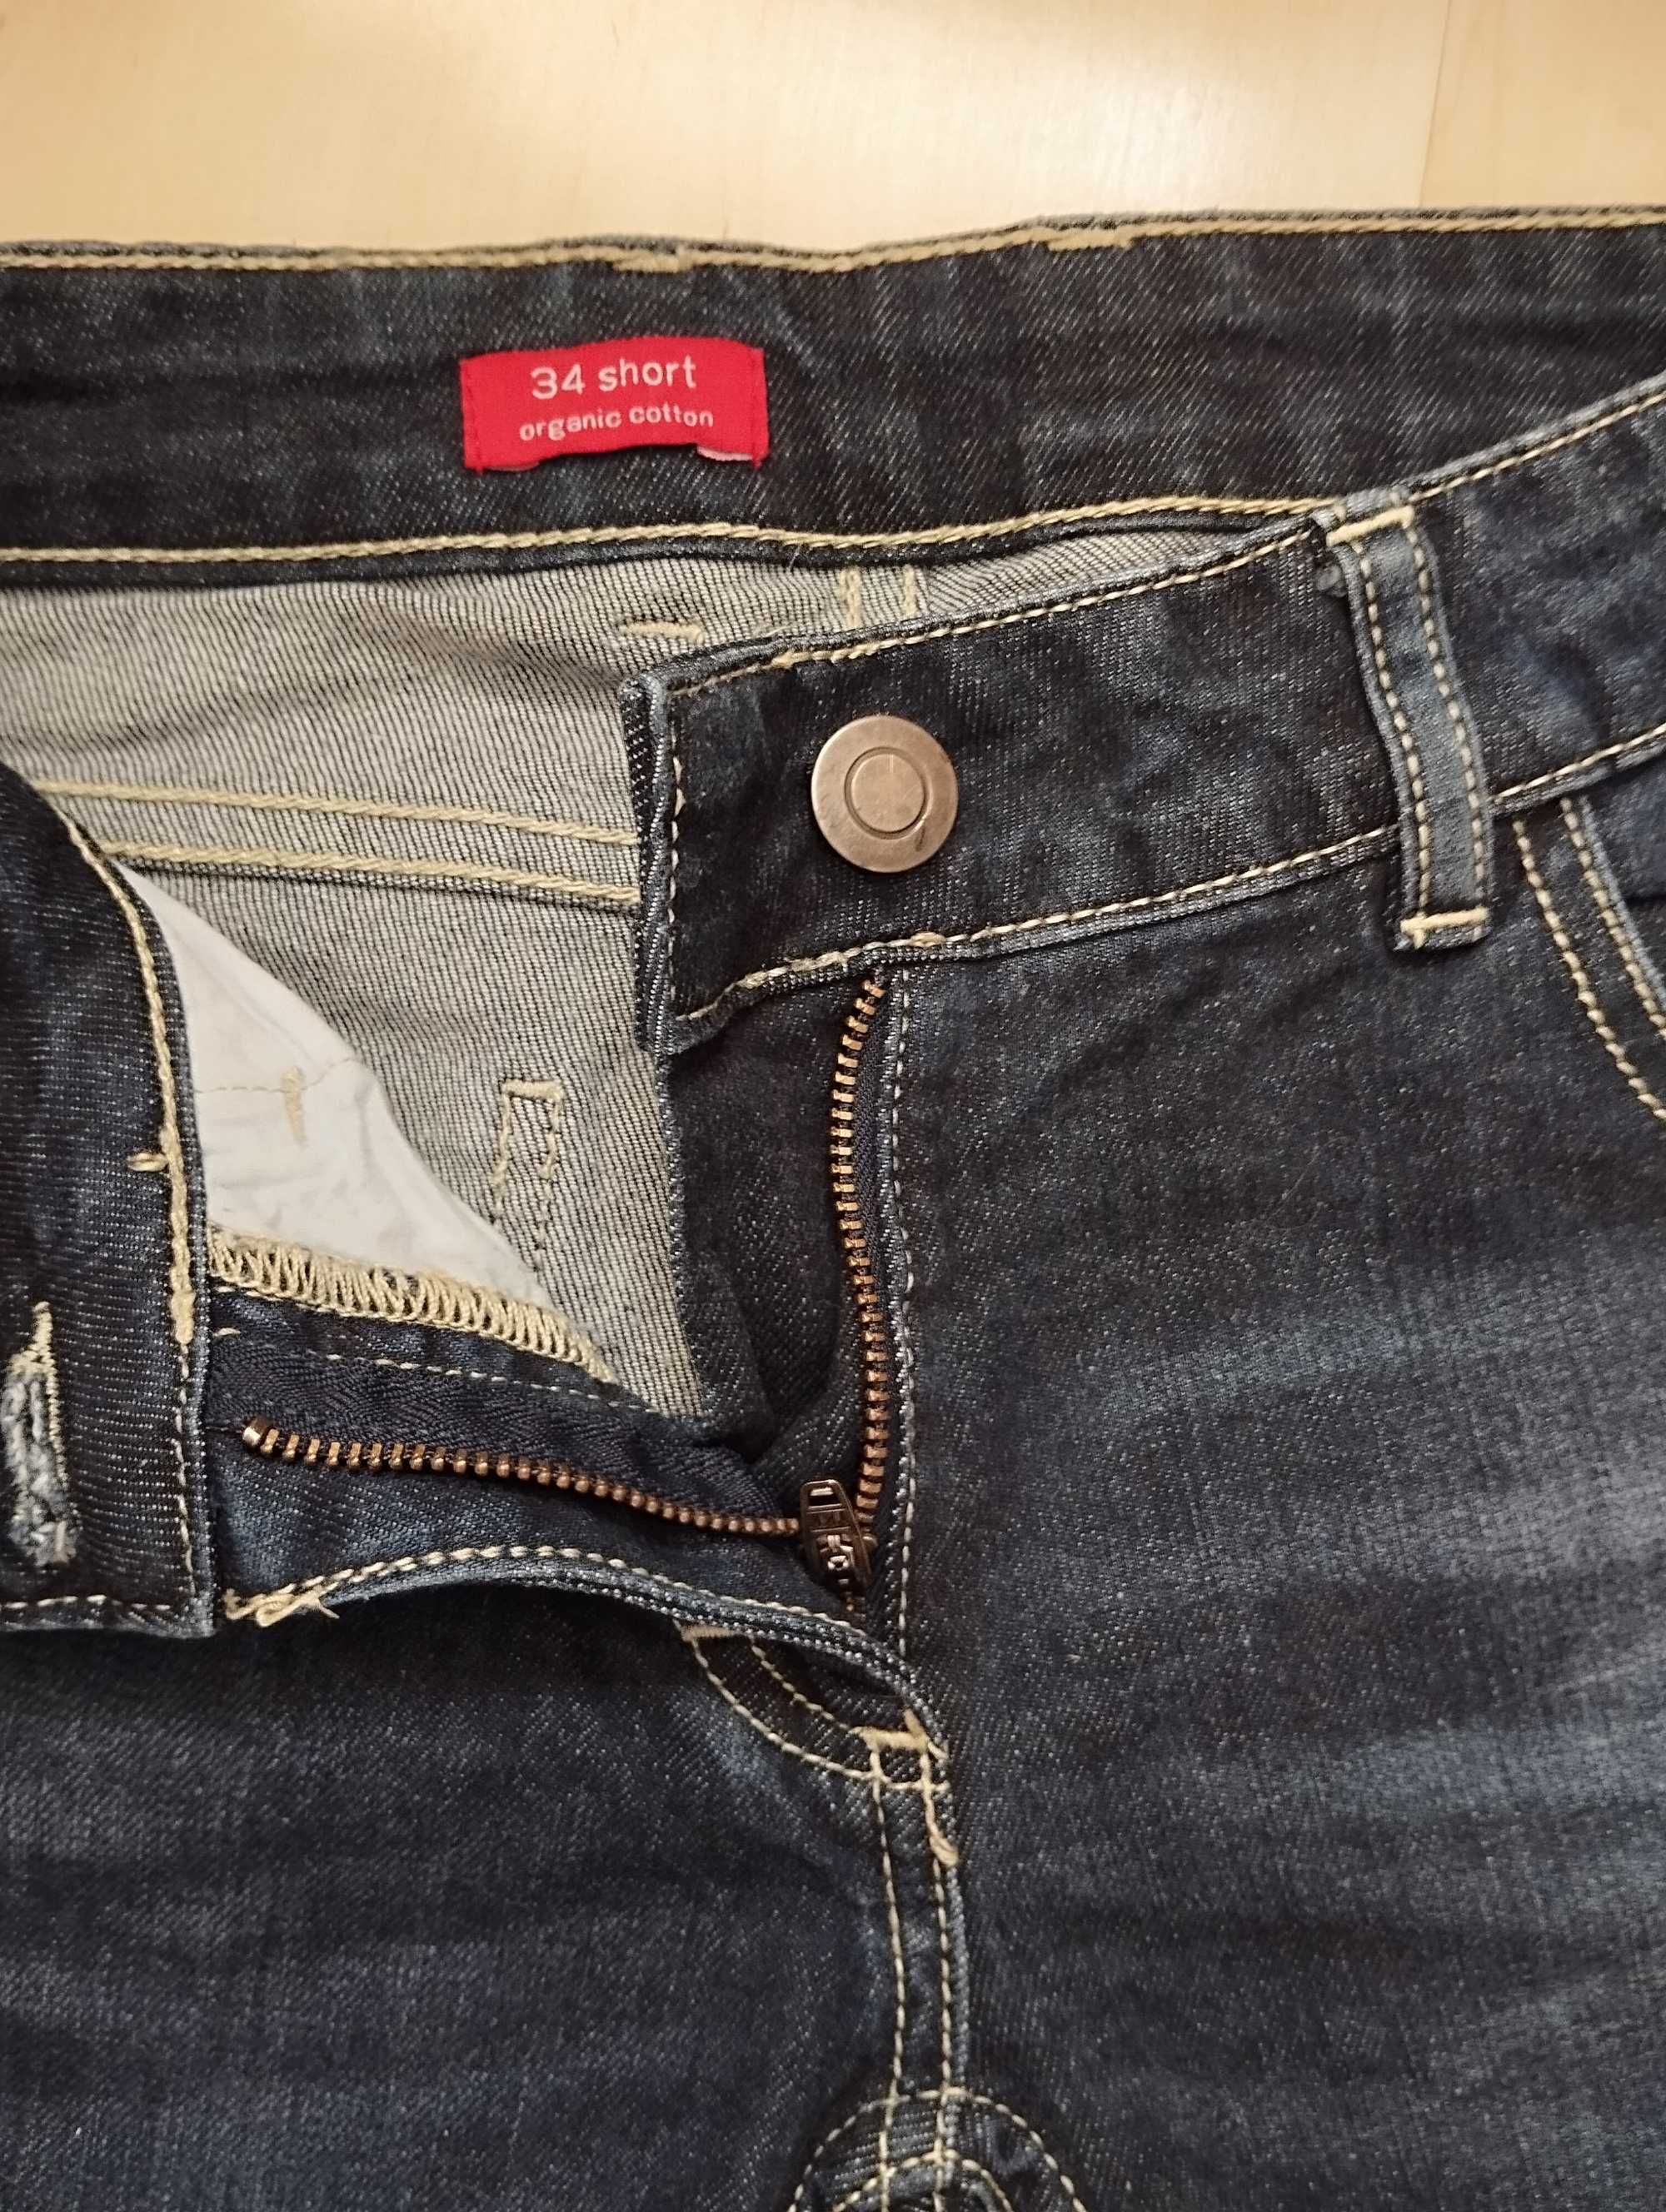 granatowe szorty jeansowe klasyczne XS podwinięte przecierane vintage